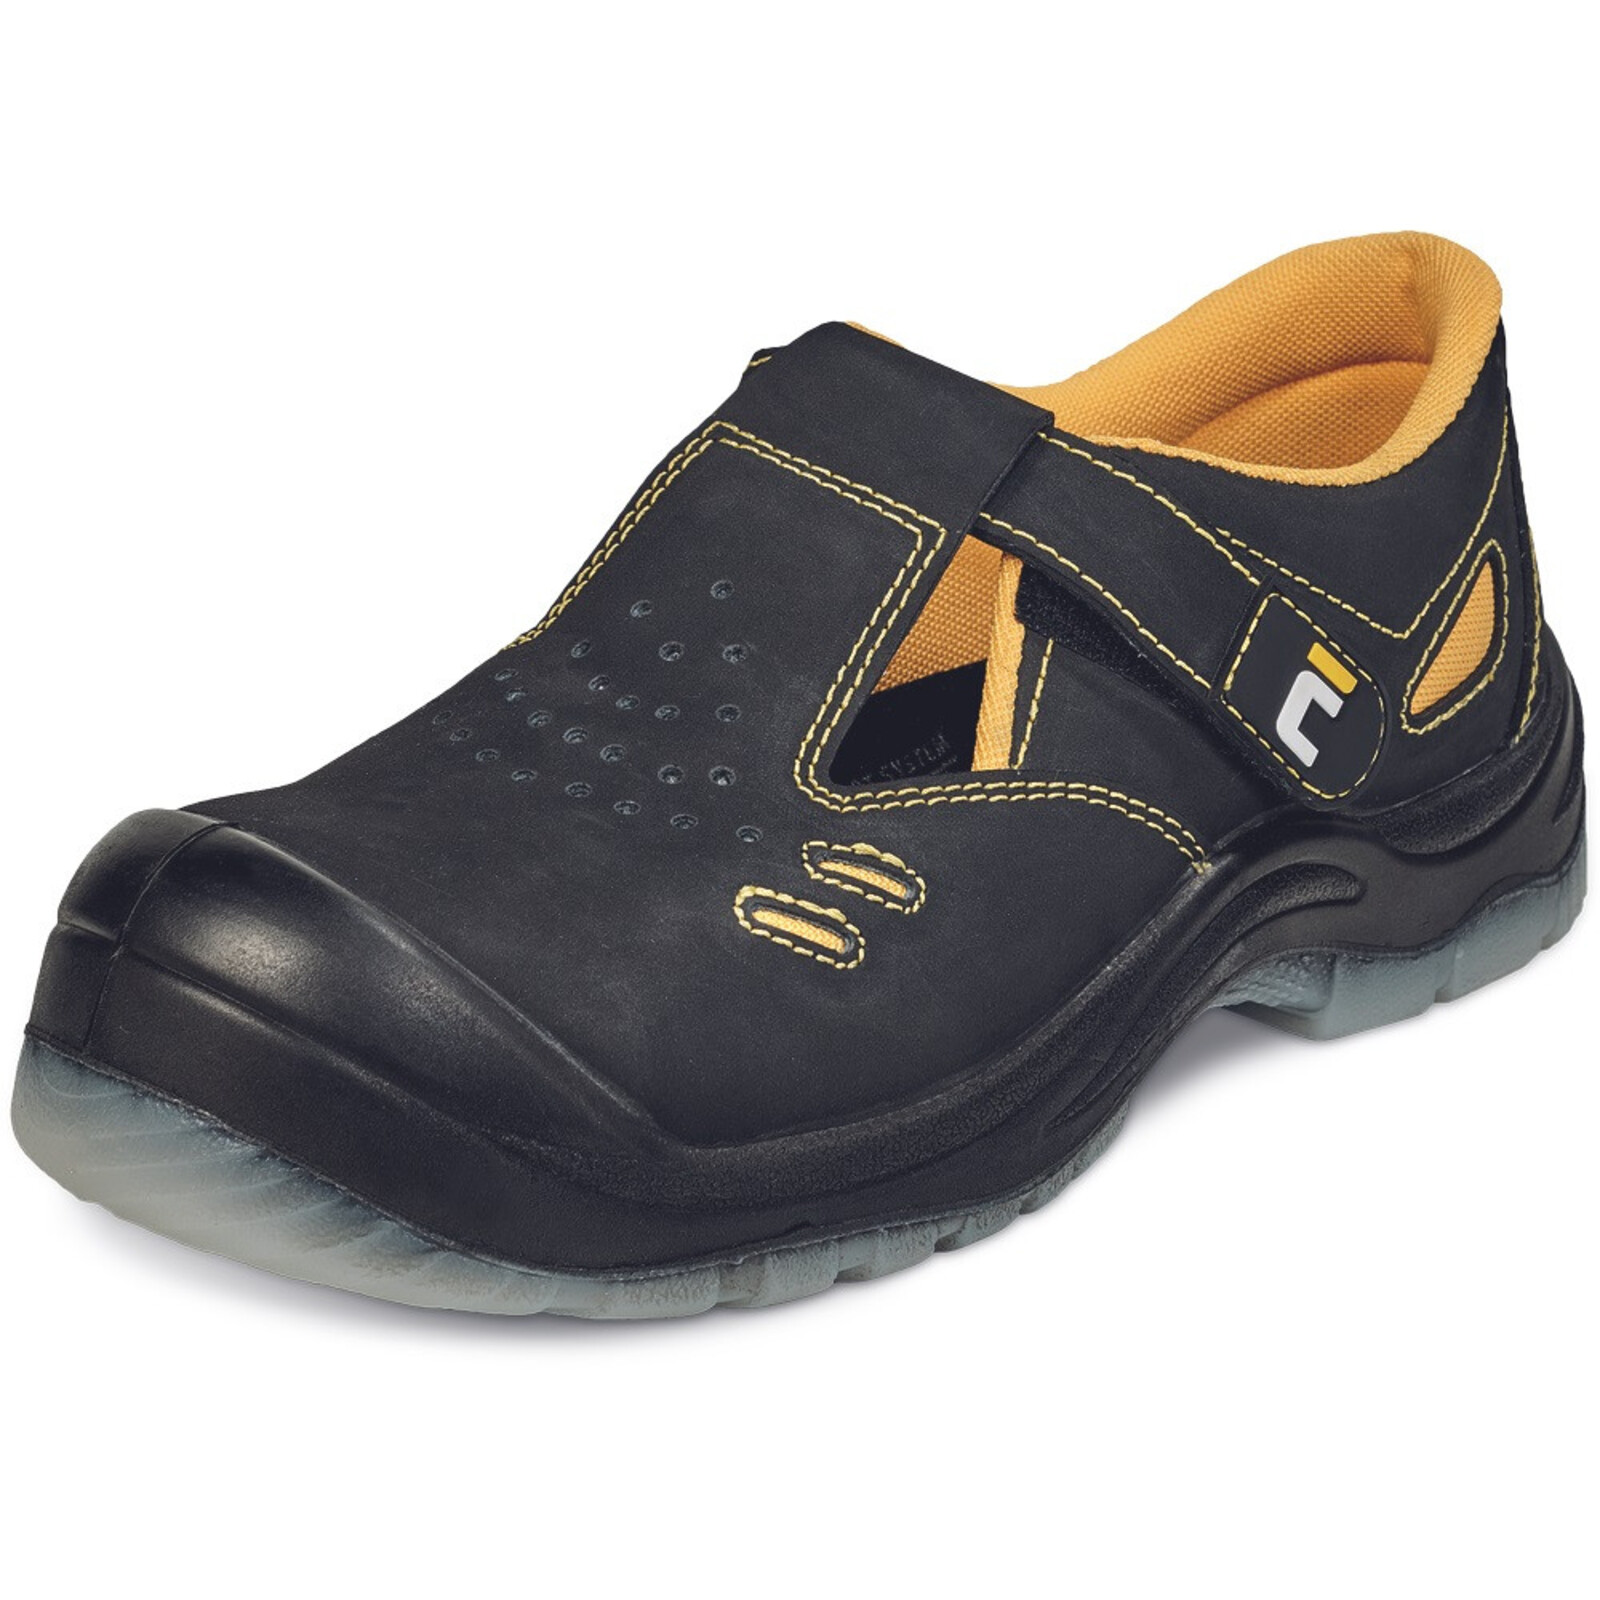 Bezpečnostné sandále Cerva BK TPU MF S1P SRC - veľkosť: 47, farba: čierna/žltá